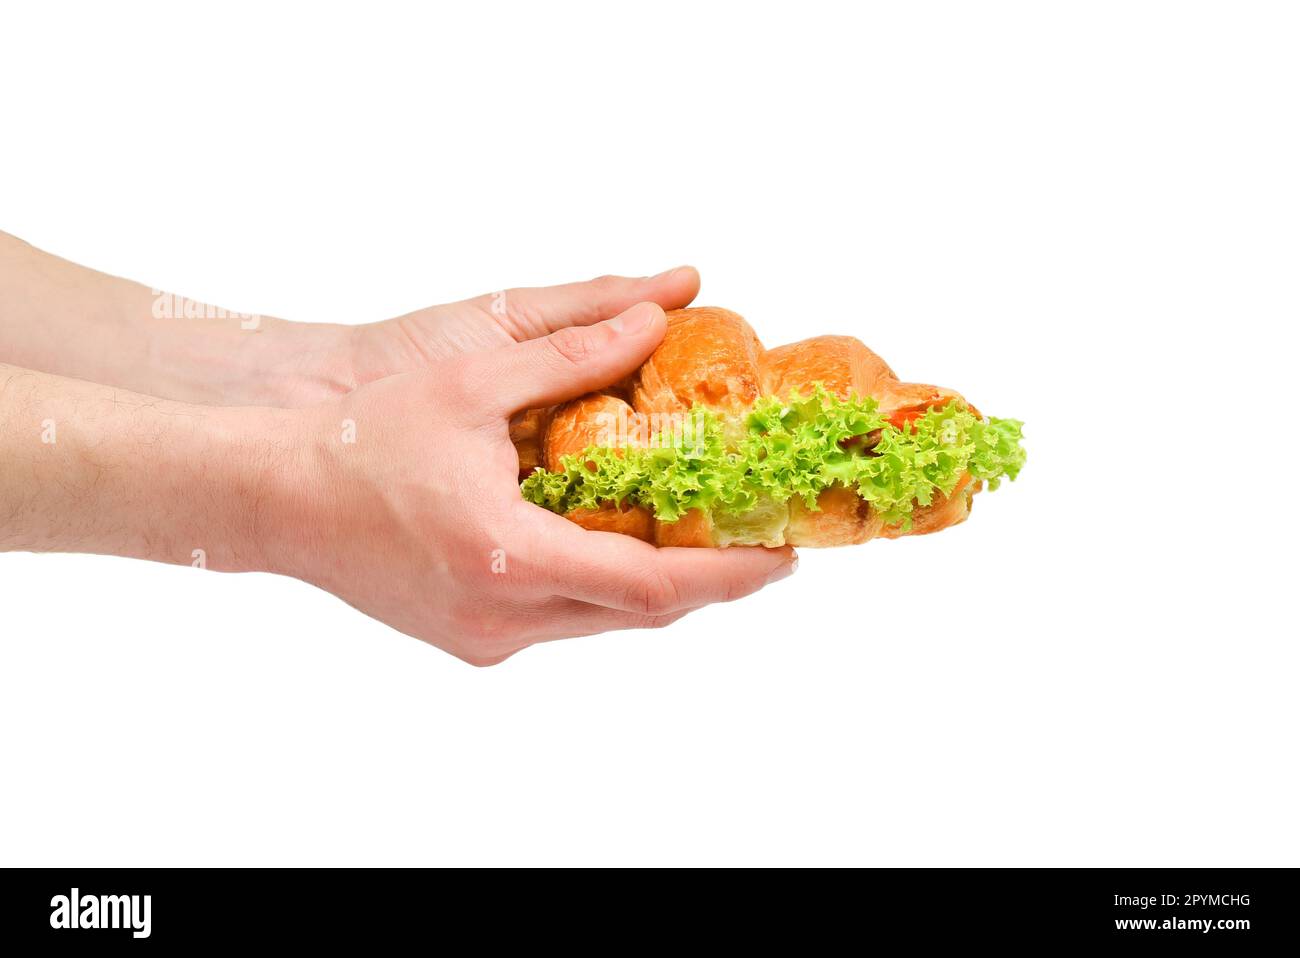 Verkauf von frisch gebackenen knusprigen Sandwich-Croissants mit Salat. Fast Food wird in Handkopien aufbewahrt. Stockfoto